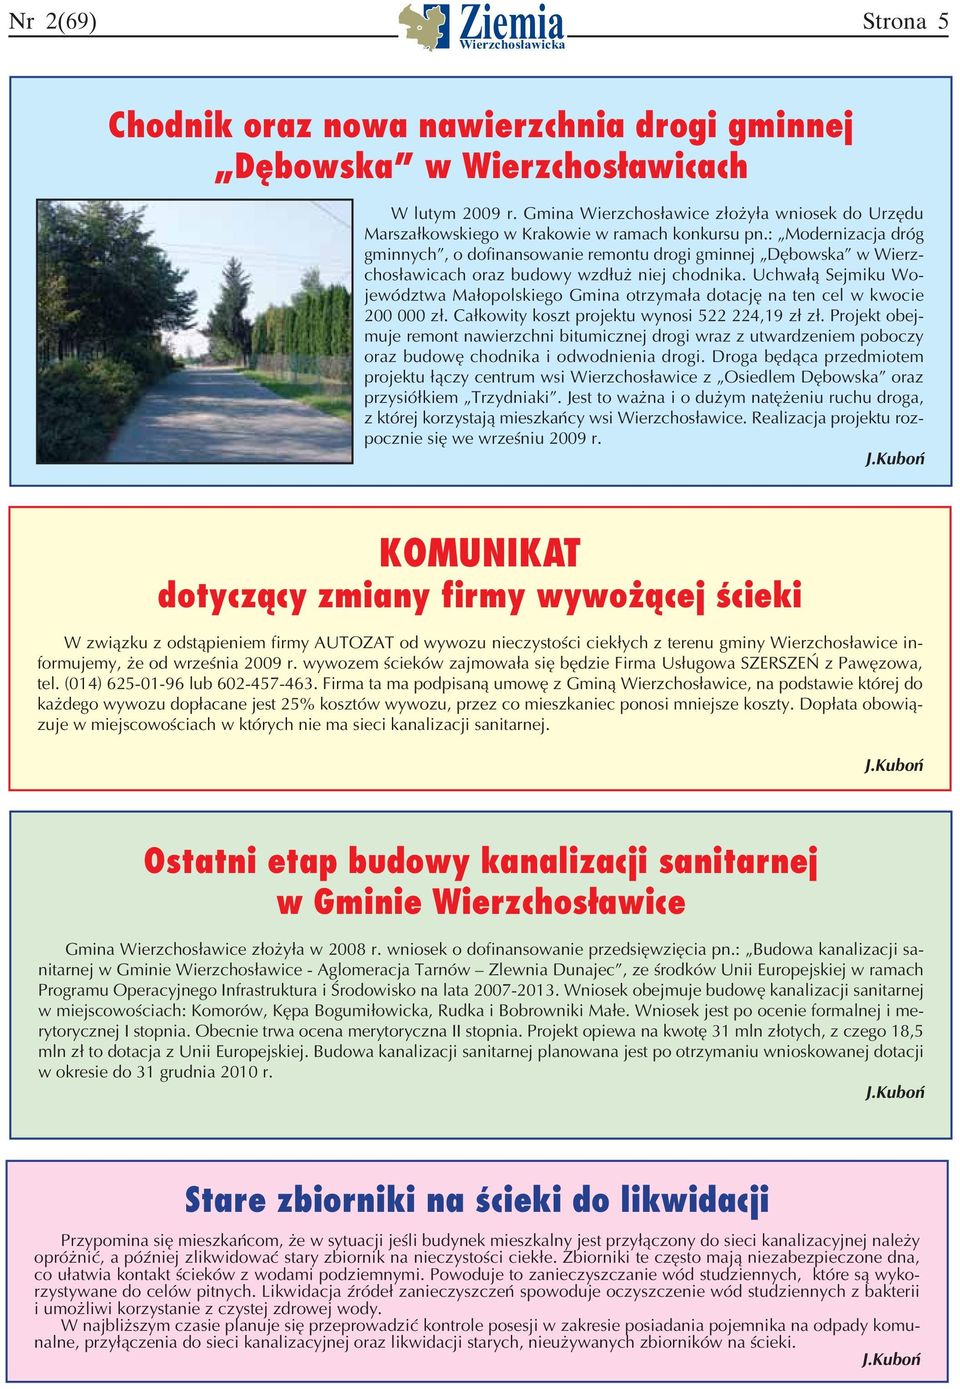 : Modernizacja dróg gminnych, o dofinansowanie remontu drogi gminnej Dębowska w Wierzchosławicach oraz budowy wzdłuż niej chodnika.